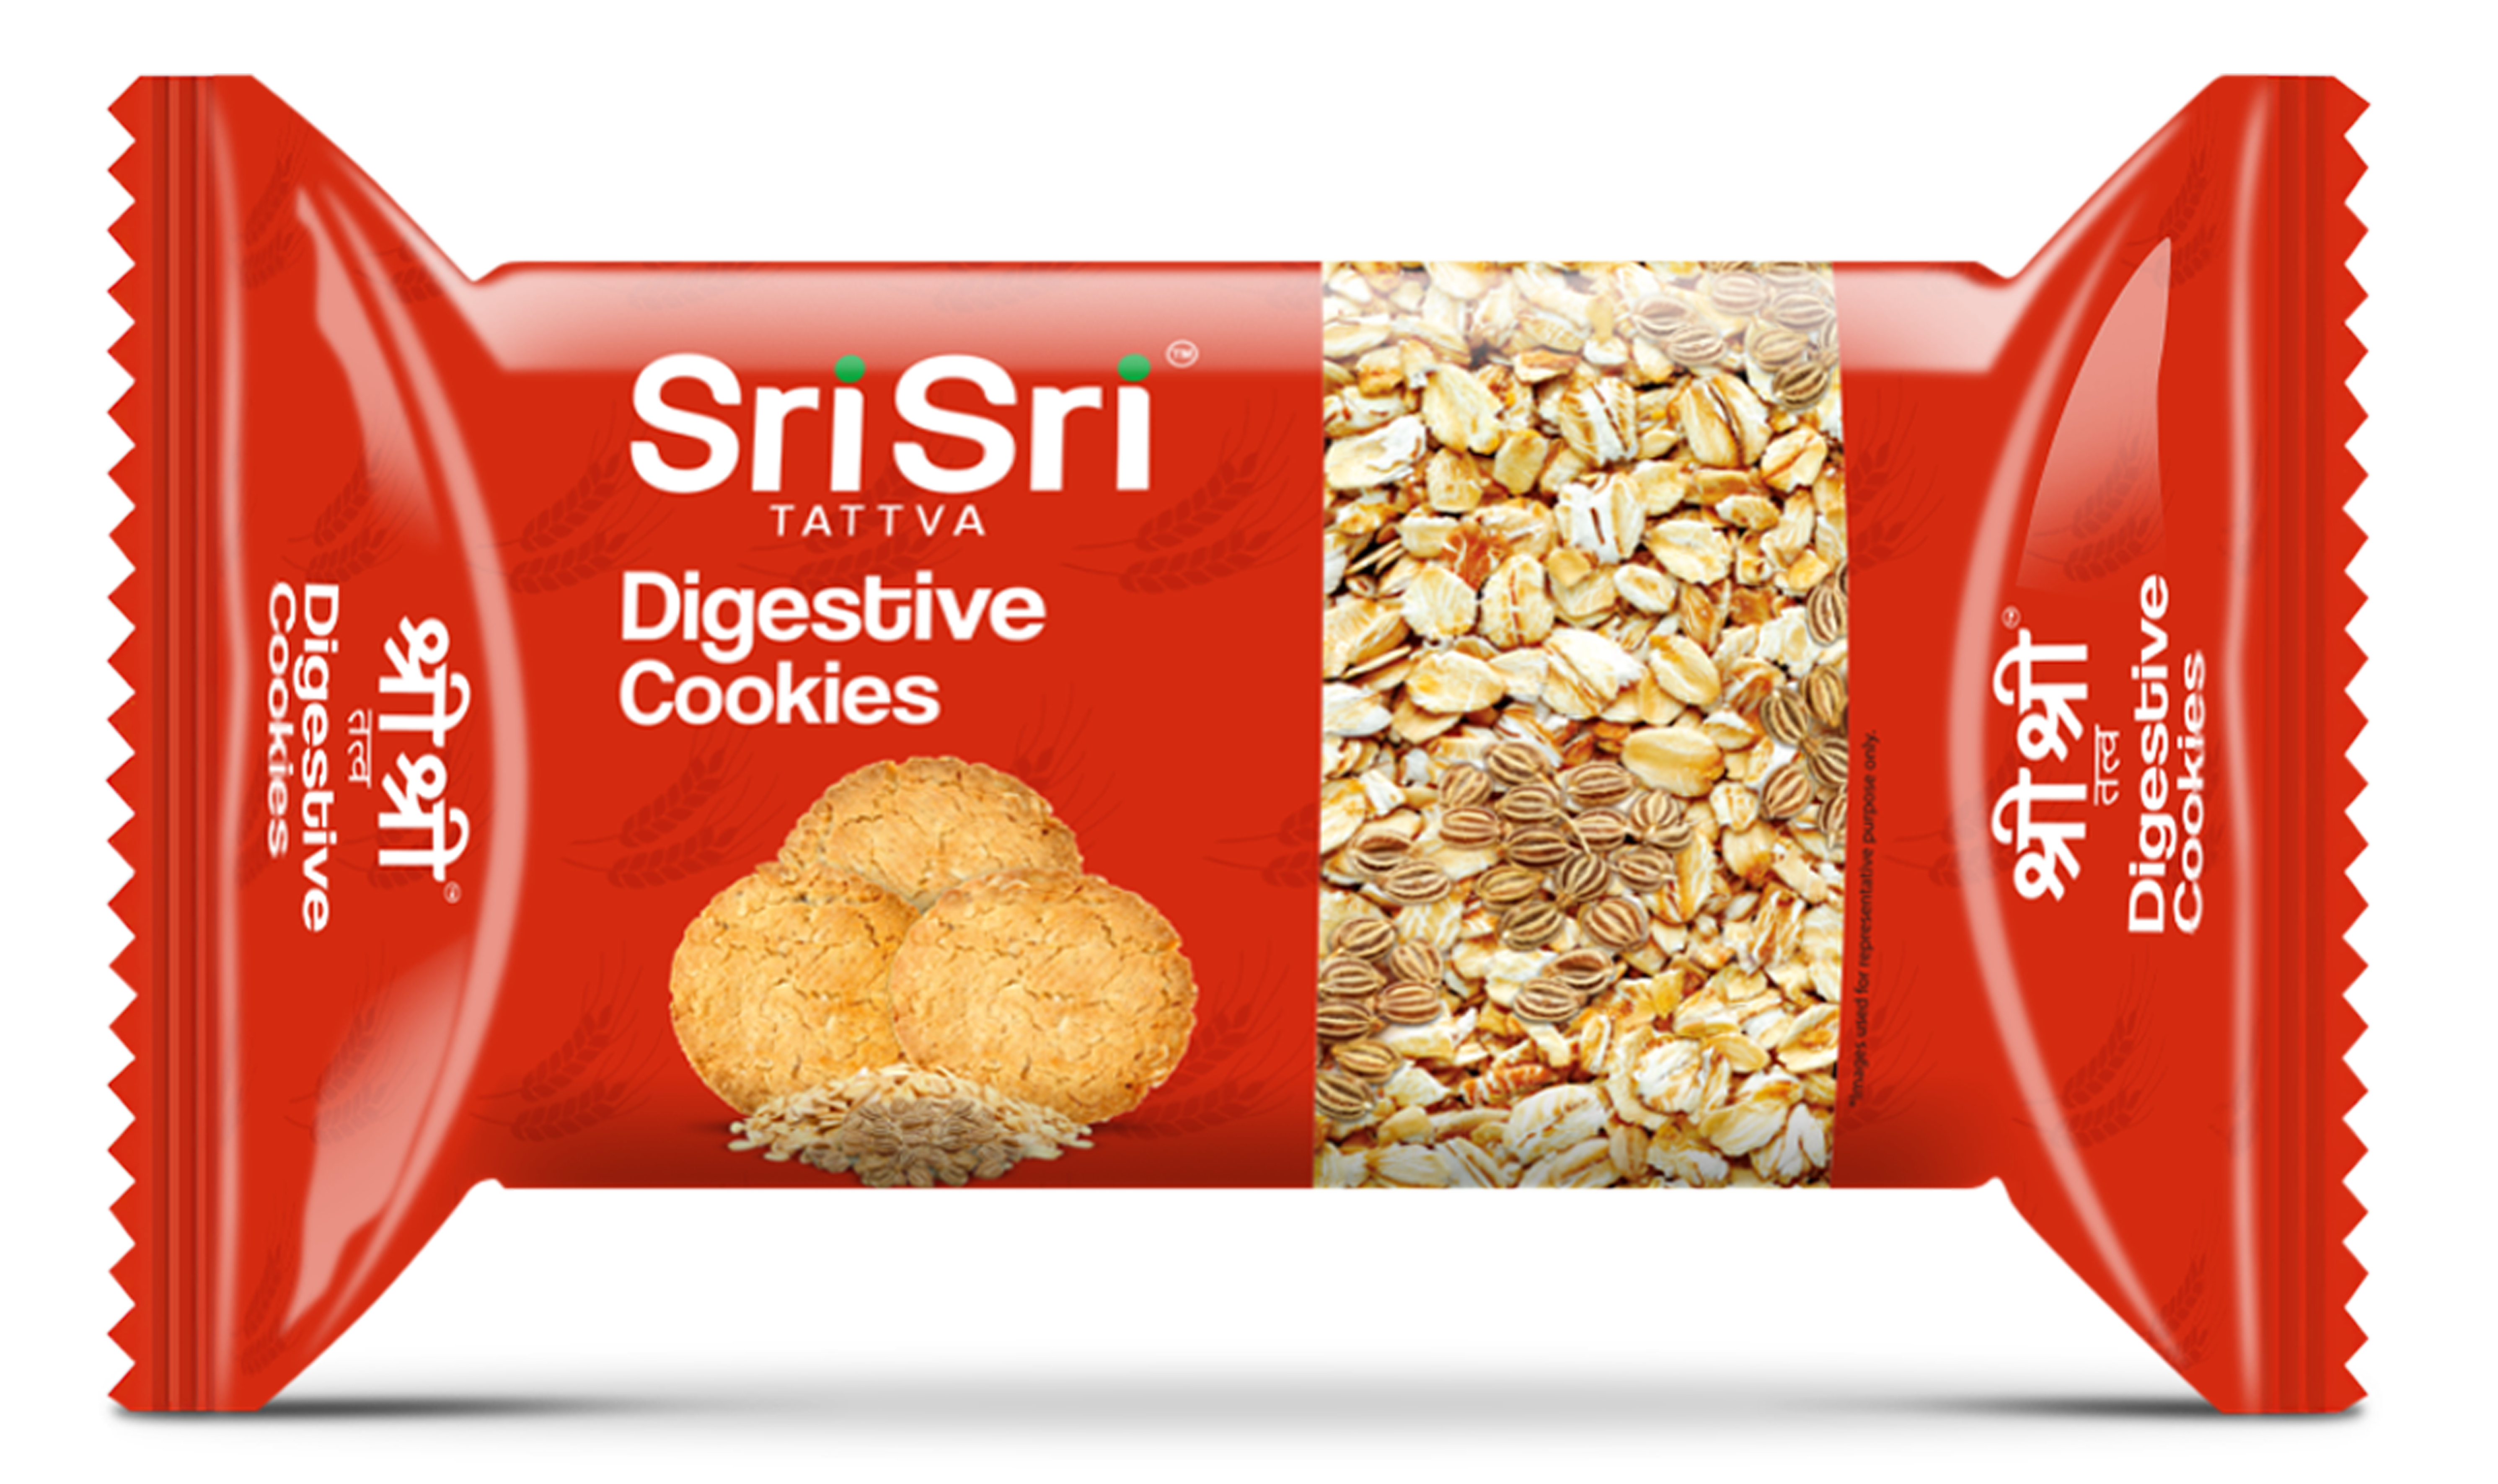 Buy Sri Sri Tattva Digestive Cookies at Best Price Online